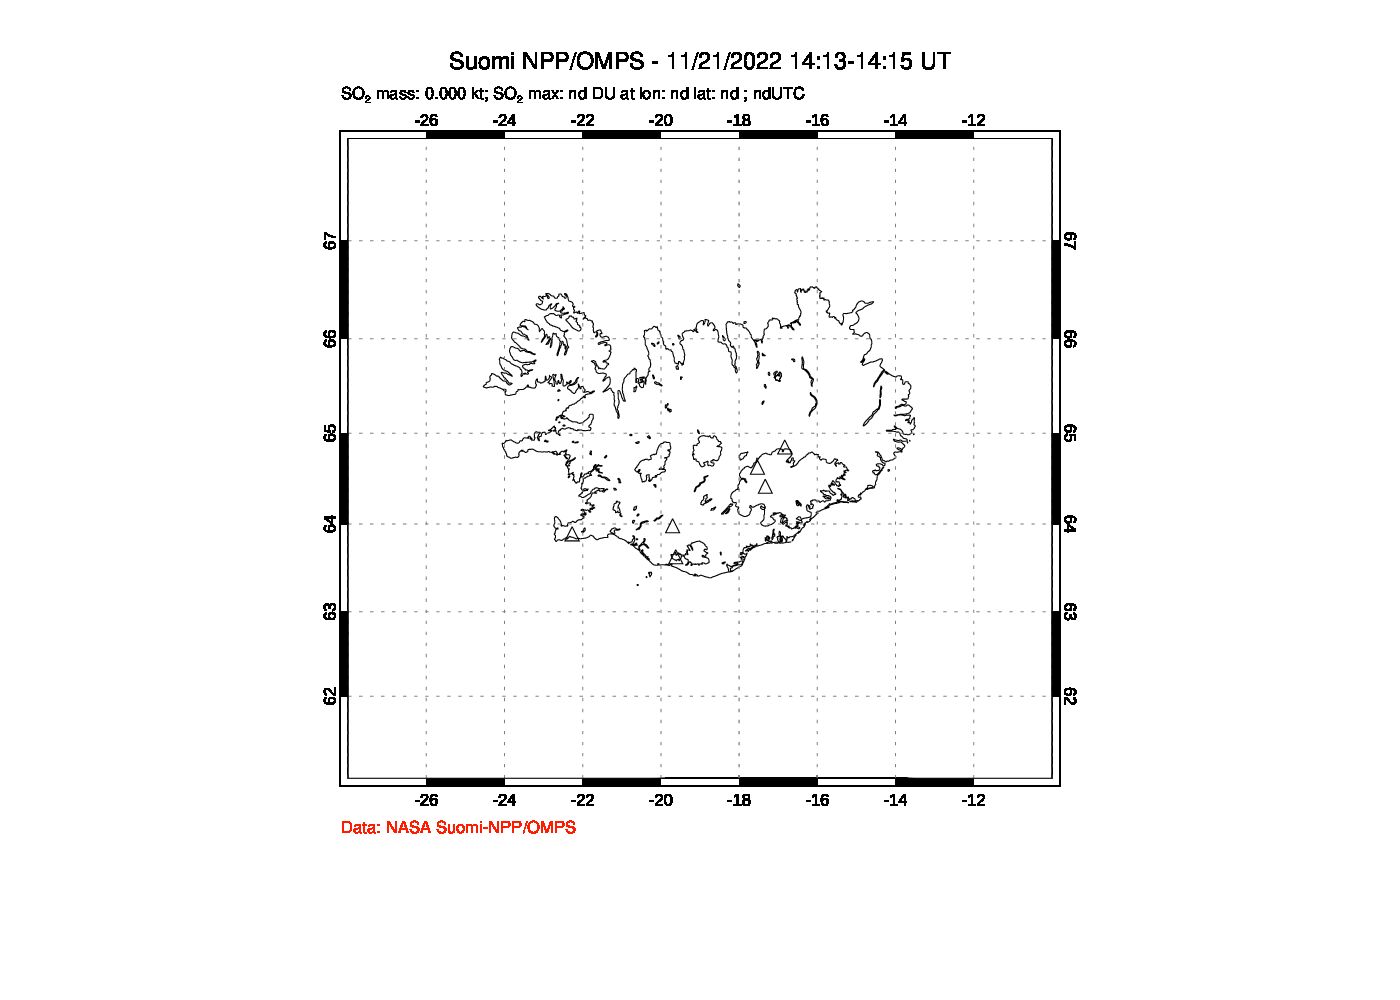 A sulfur dioxide image over Iceland on Nov 21, 2022.